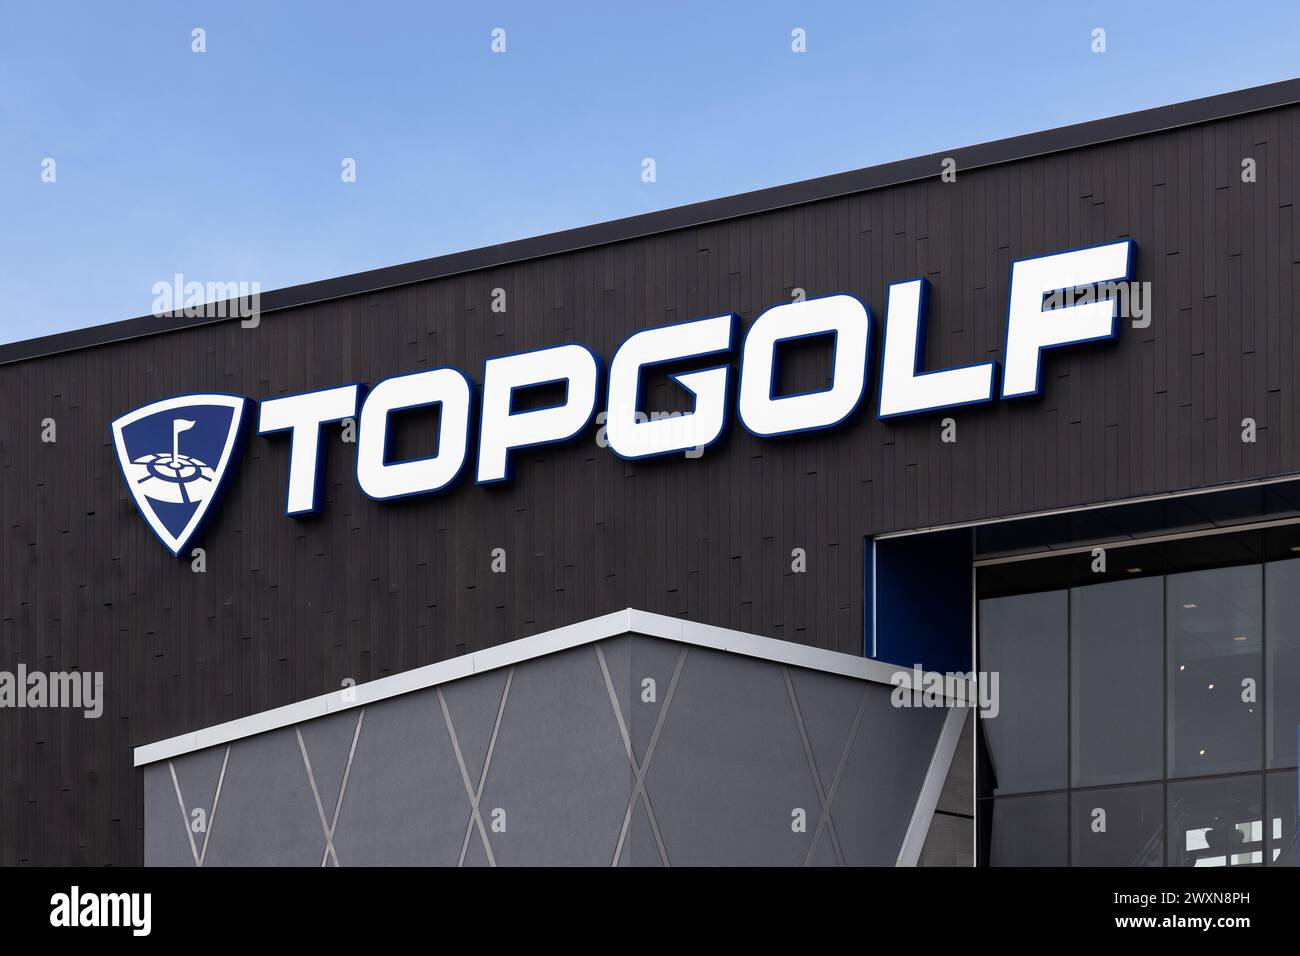 Topgolf verfügt über mehrere Stockwerke mit Driving Range Buchten und ist ein unterhaltsamer Unterhaltungskomplex für alle Altersgruppen. Stockfoto